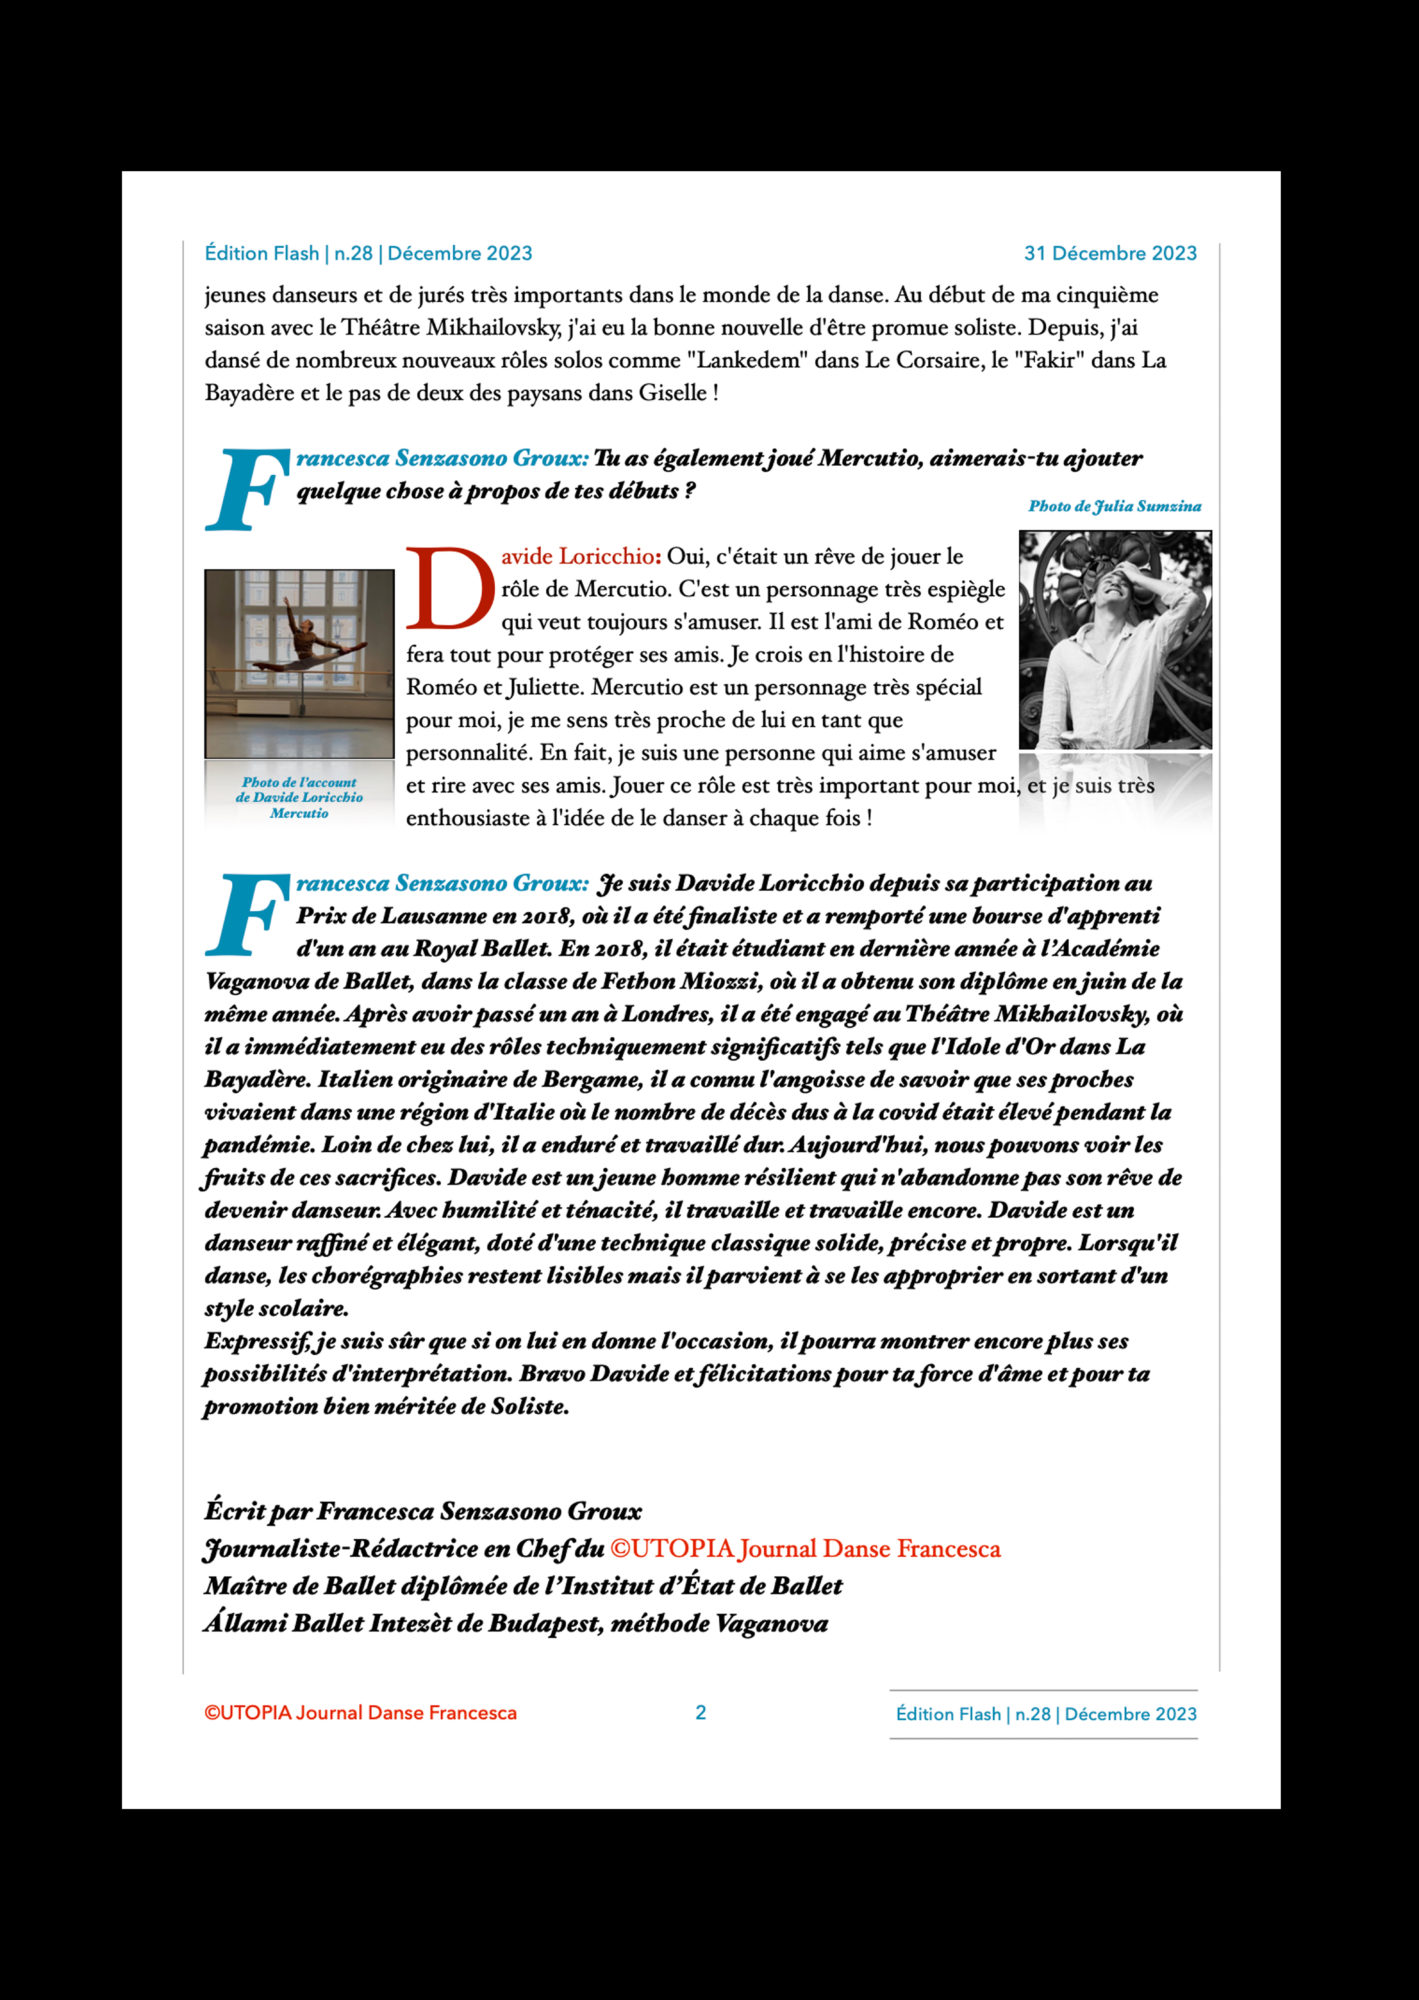 ©UTOPIA Journal Danse Francesca Edition Flash Extraordinaire n.28 31 Décembre 2023 page 2